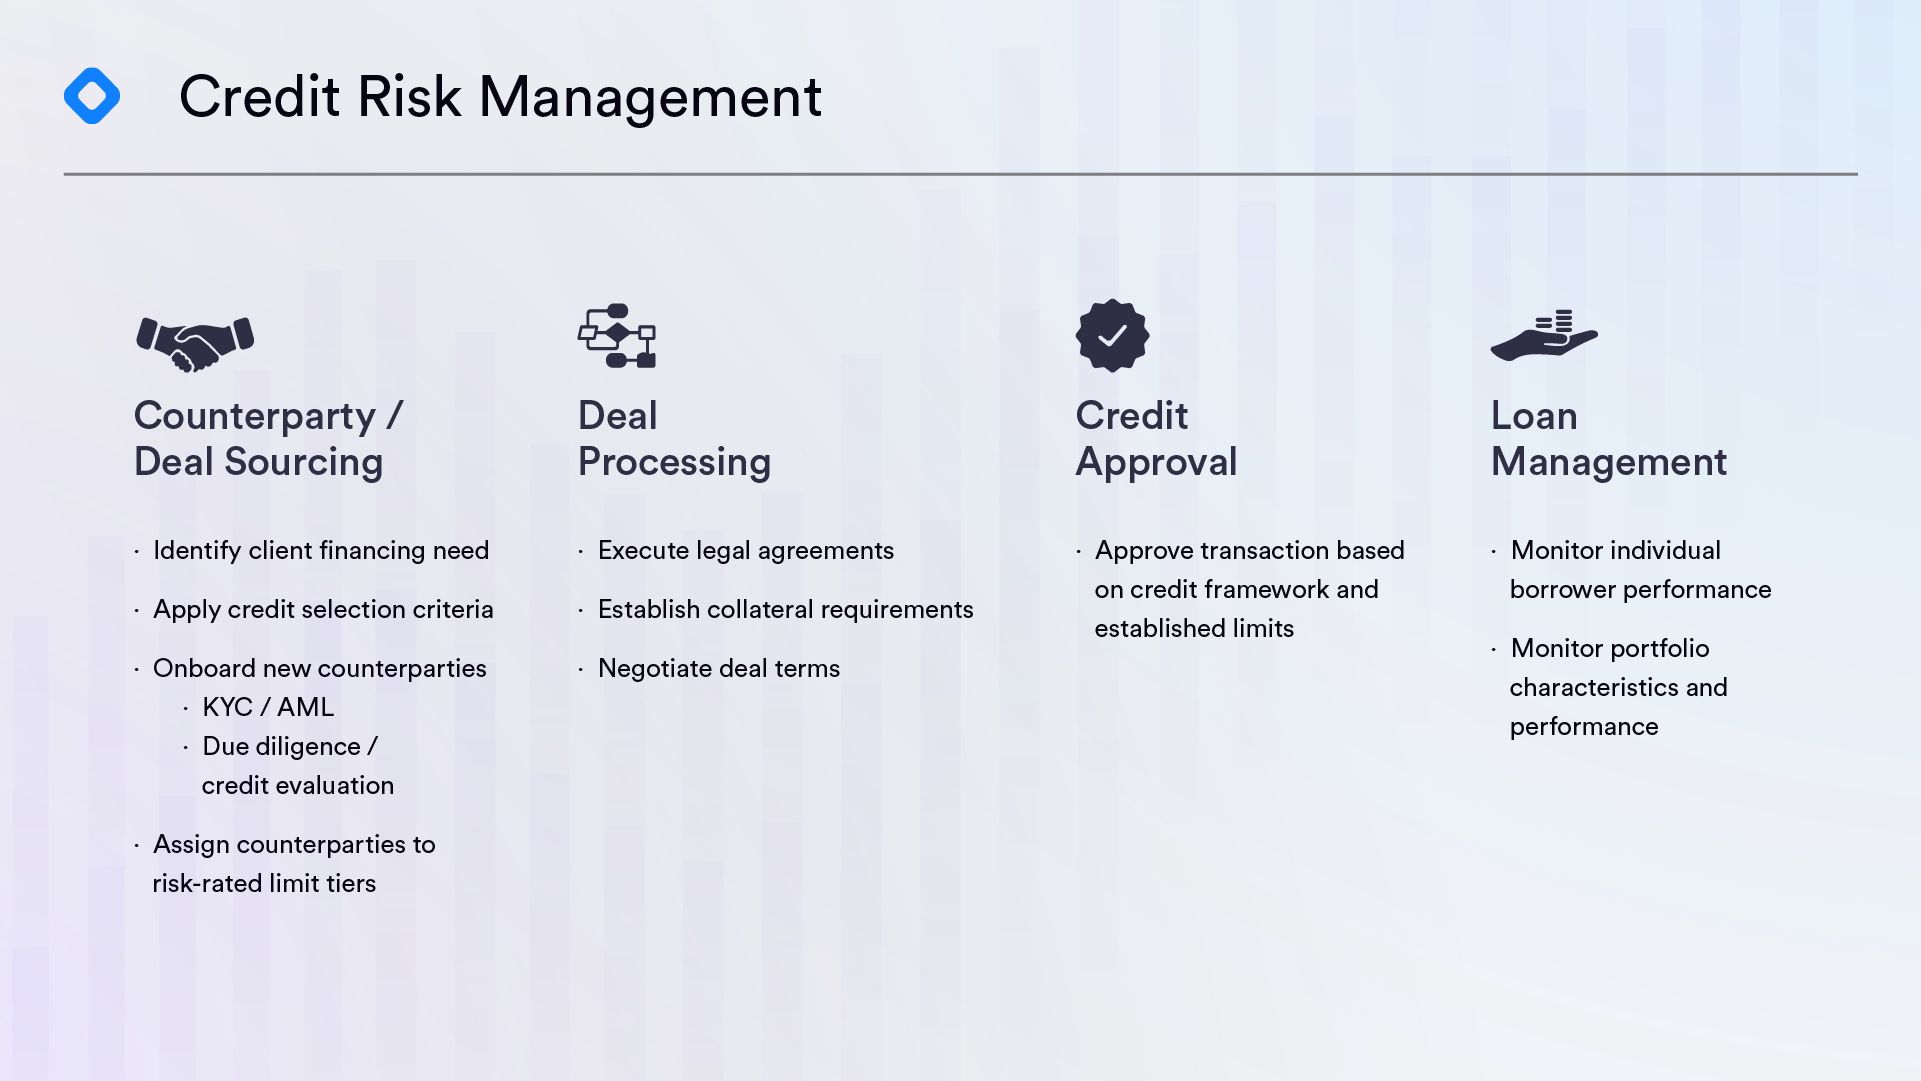 Credit Risk Management image